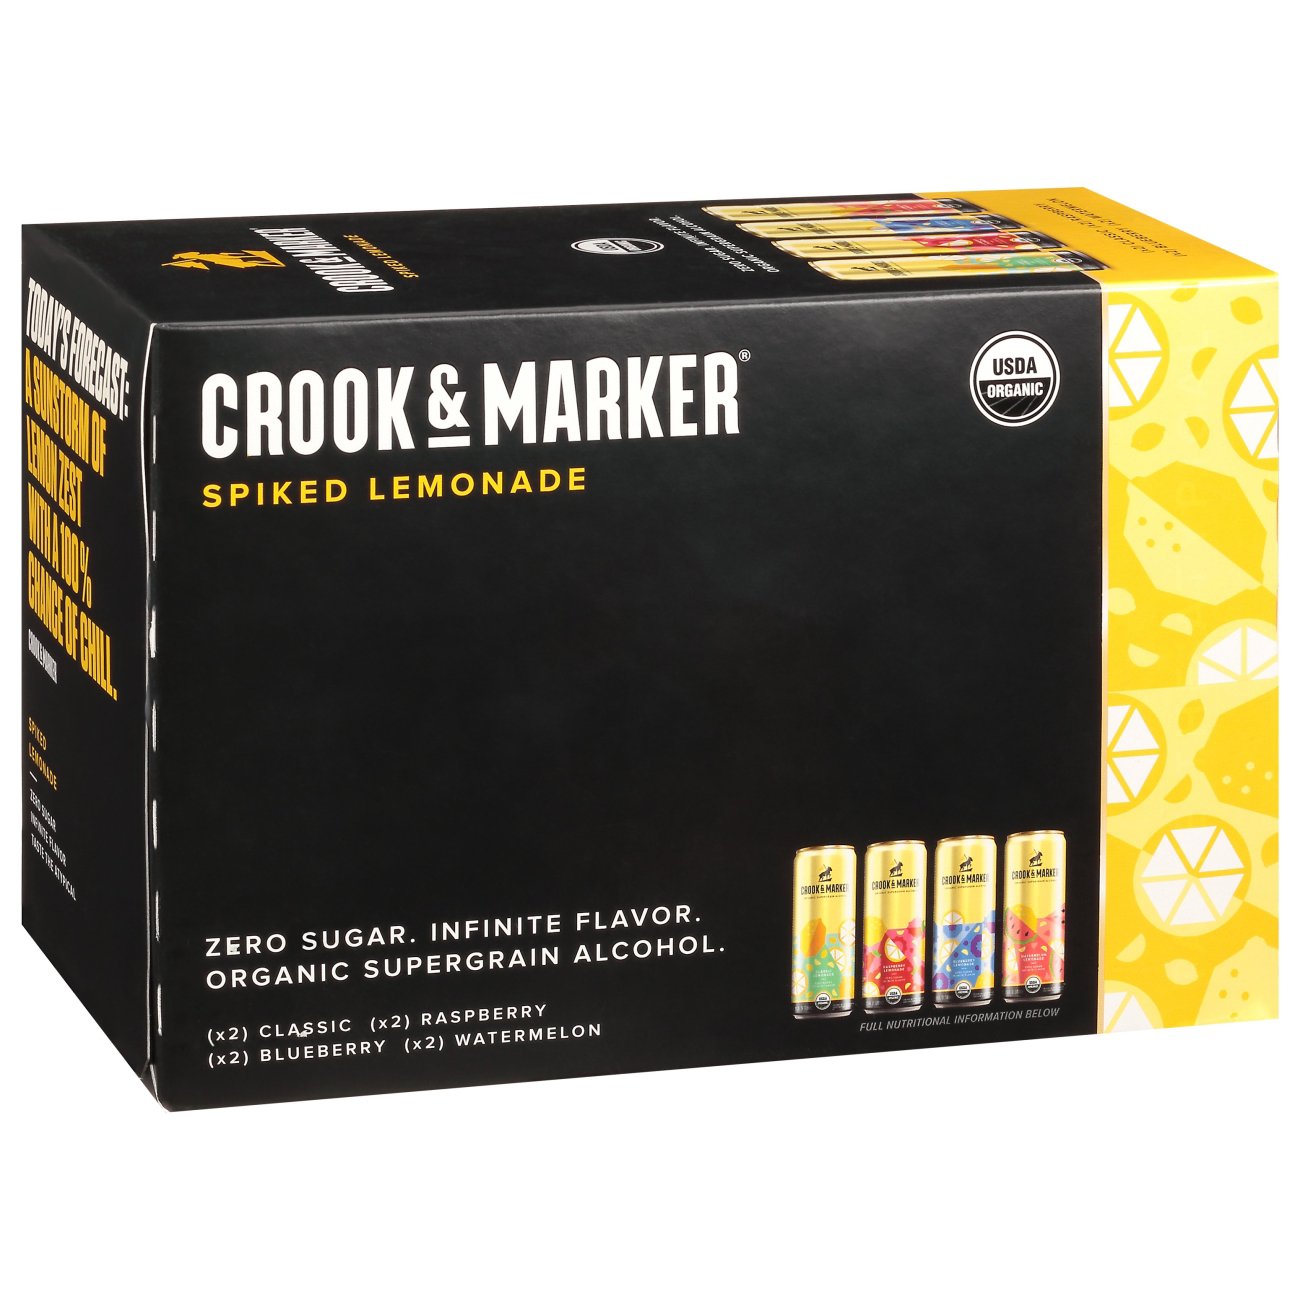 crook-marker-spiked-lemonade-variety-pack-11-5-oz-cans-shop-malt-beverages-coolers-at-h-e-b